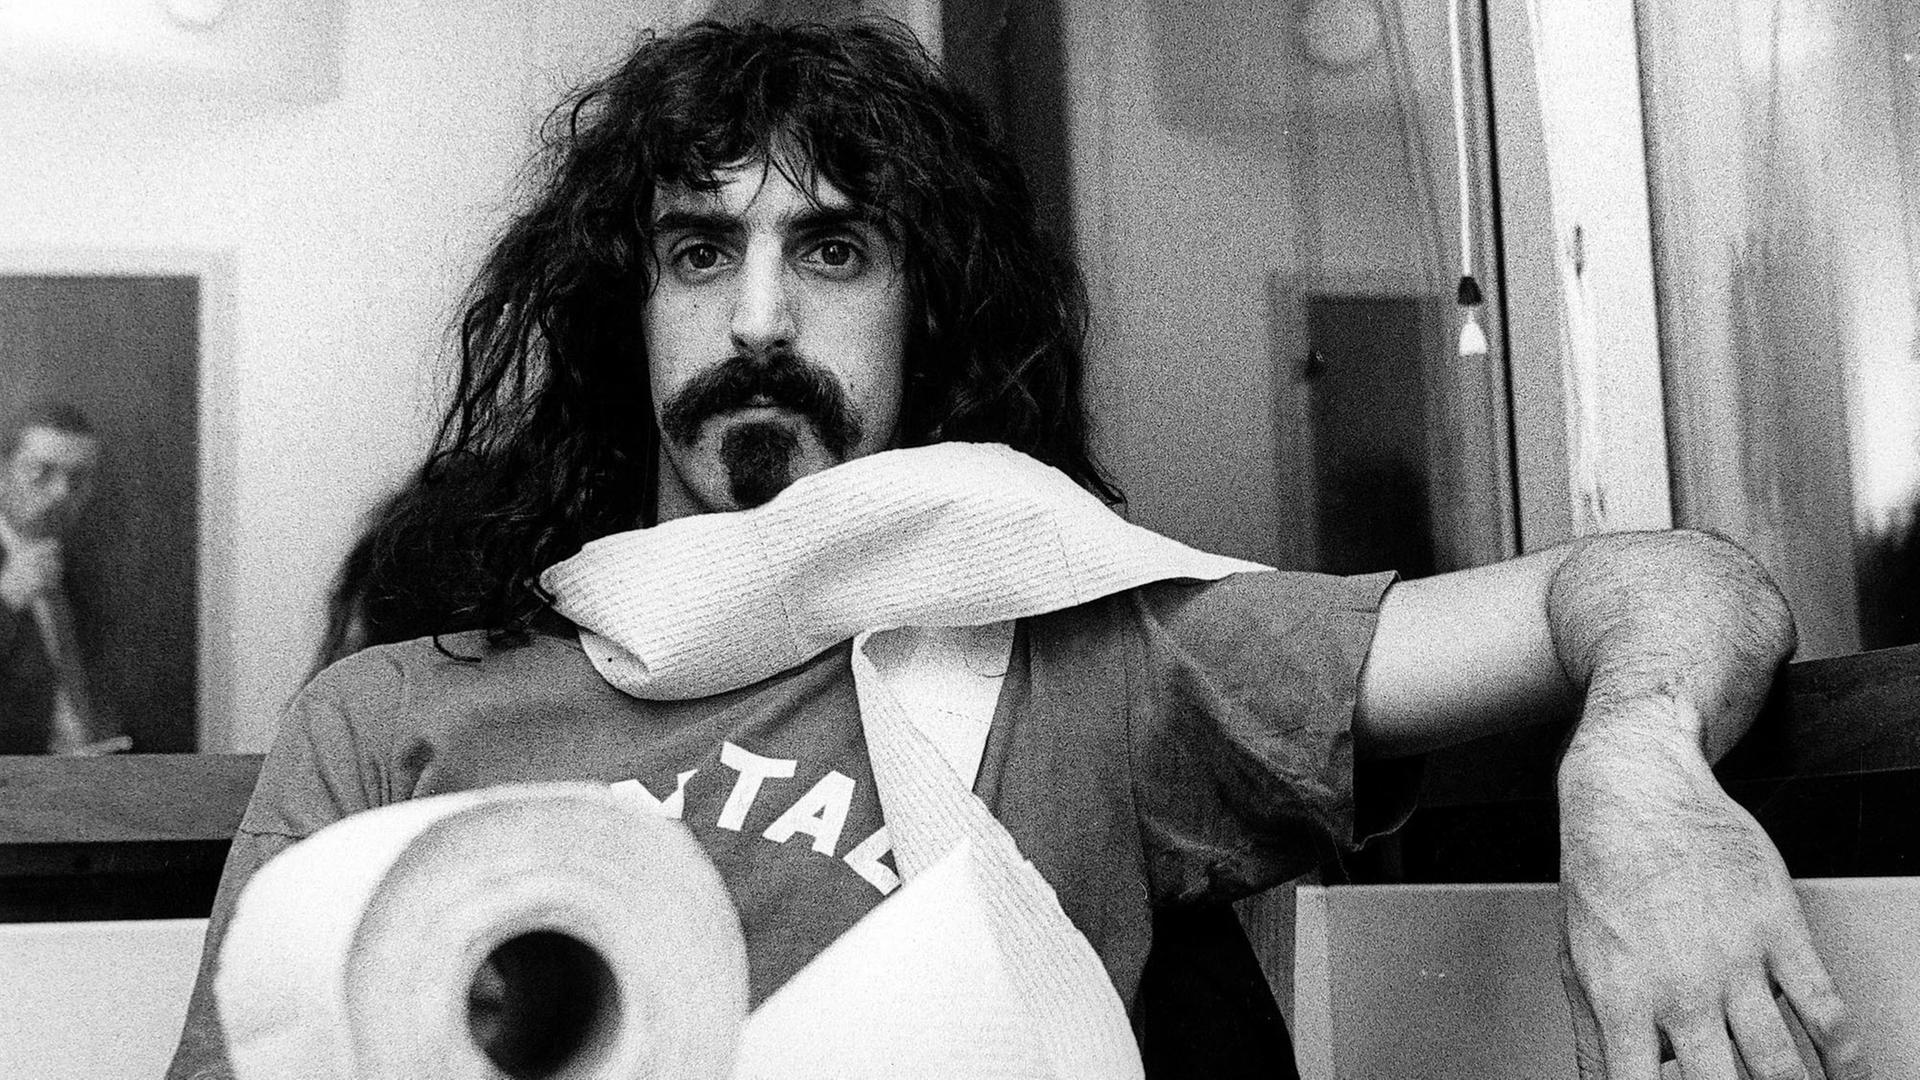 Porträt von Frank Zappa an einem Tisch mit einer Klorolle, die er sich um den Hals gewickelt hat.